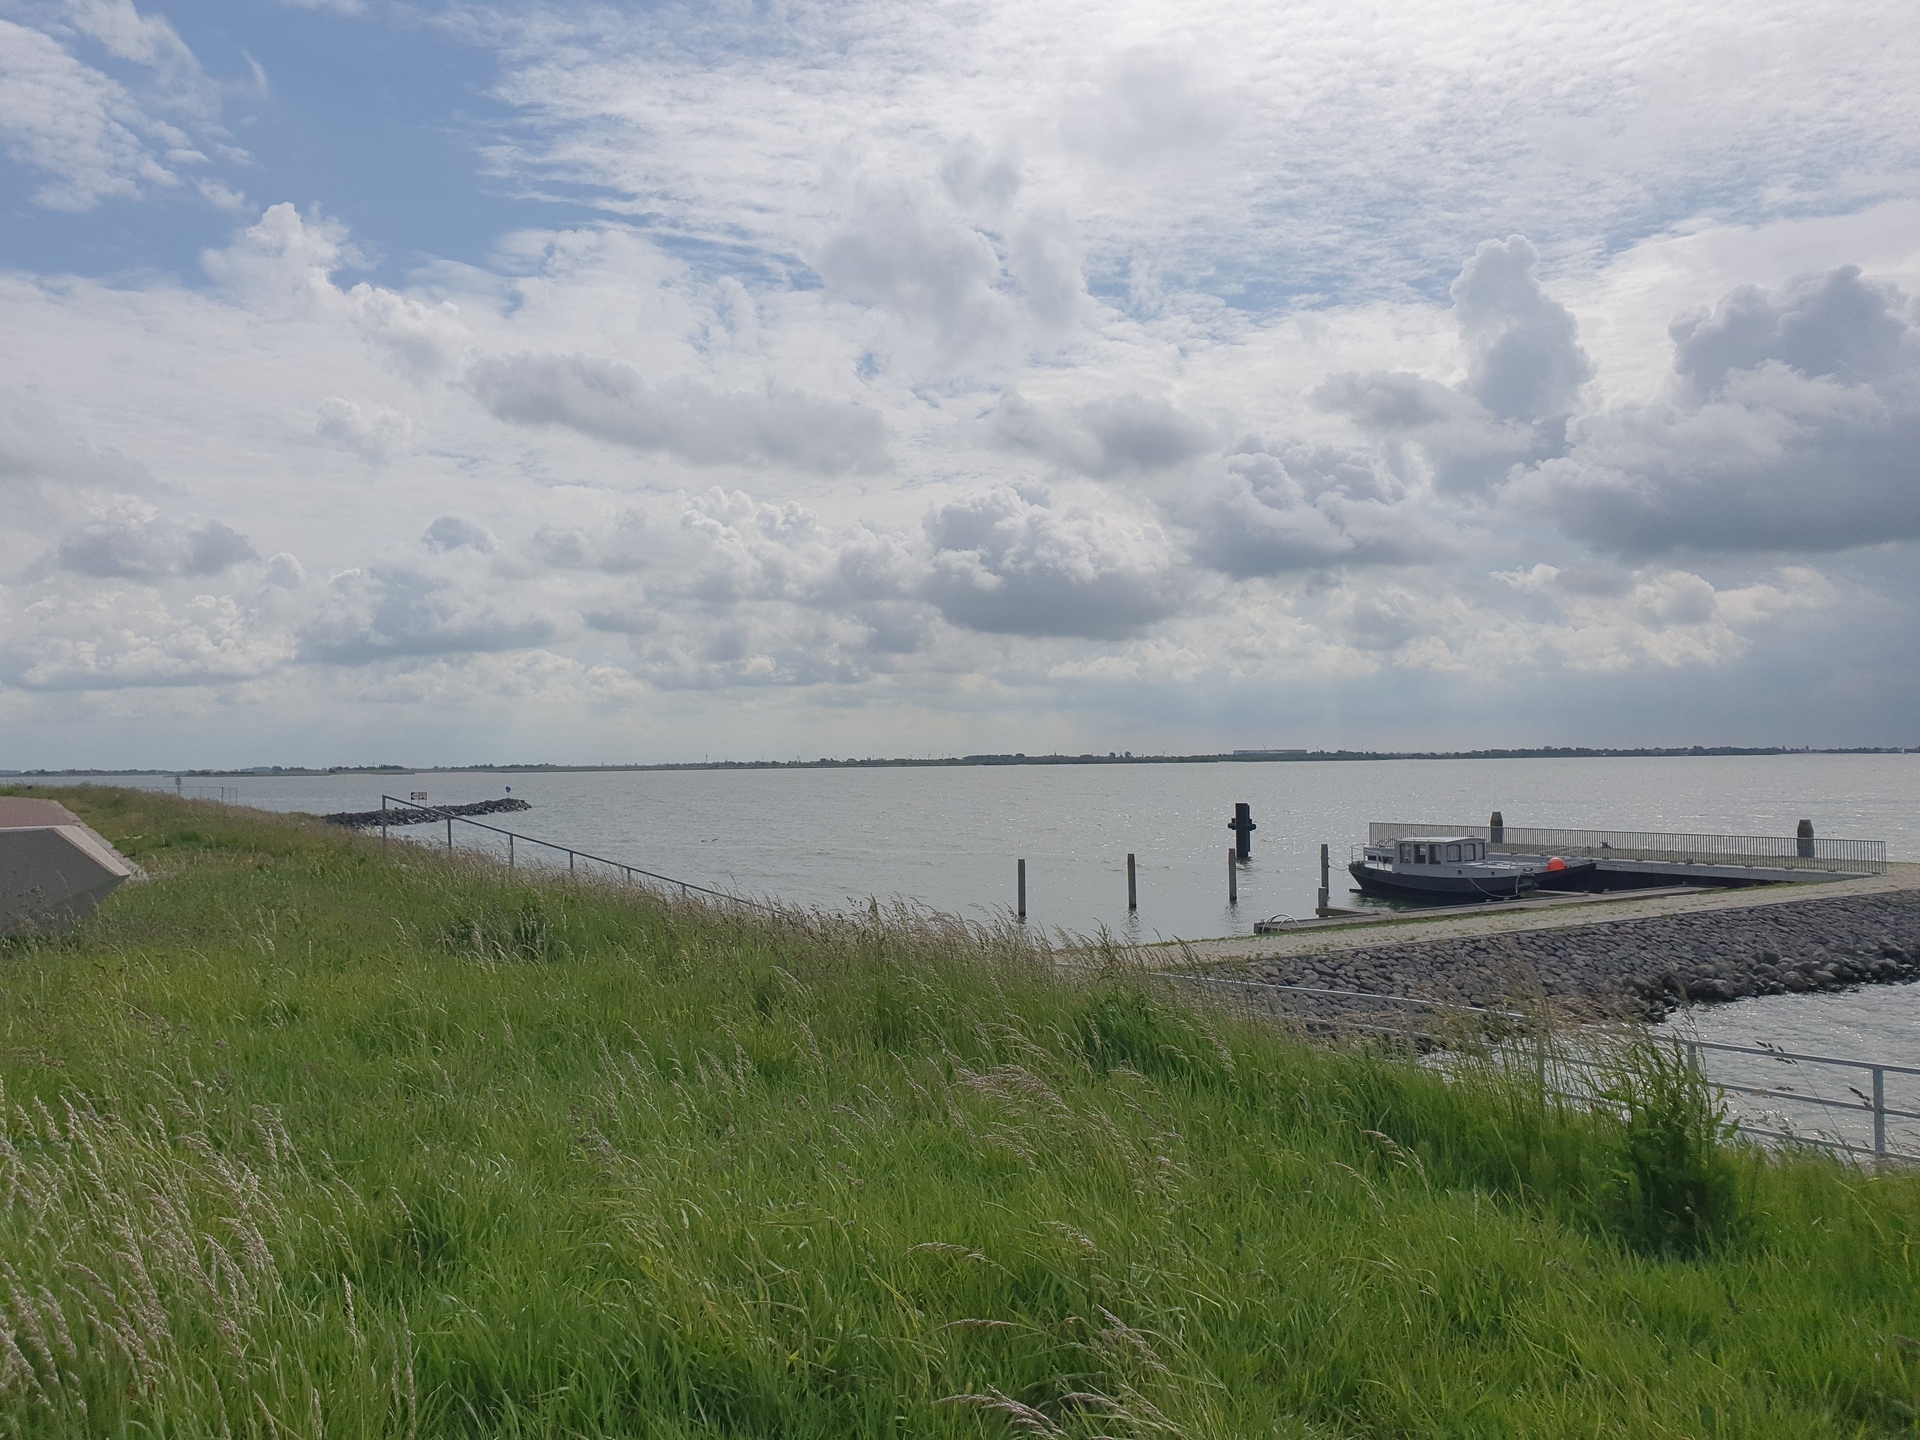 IJsselmeer at Kornwerderzand, looking left